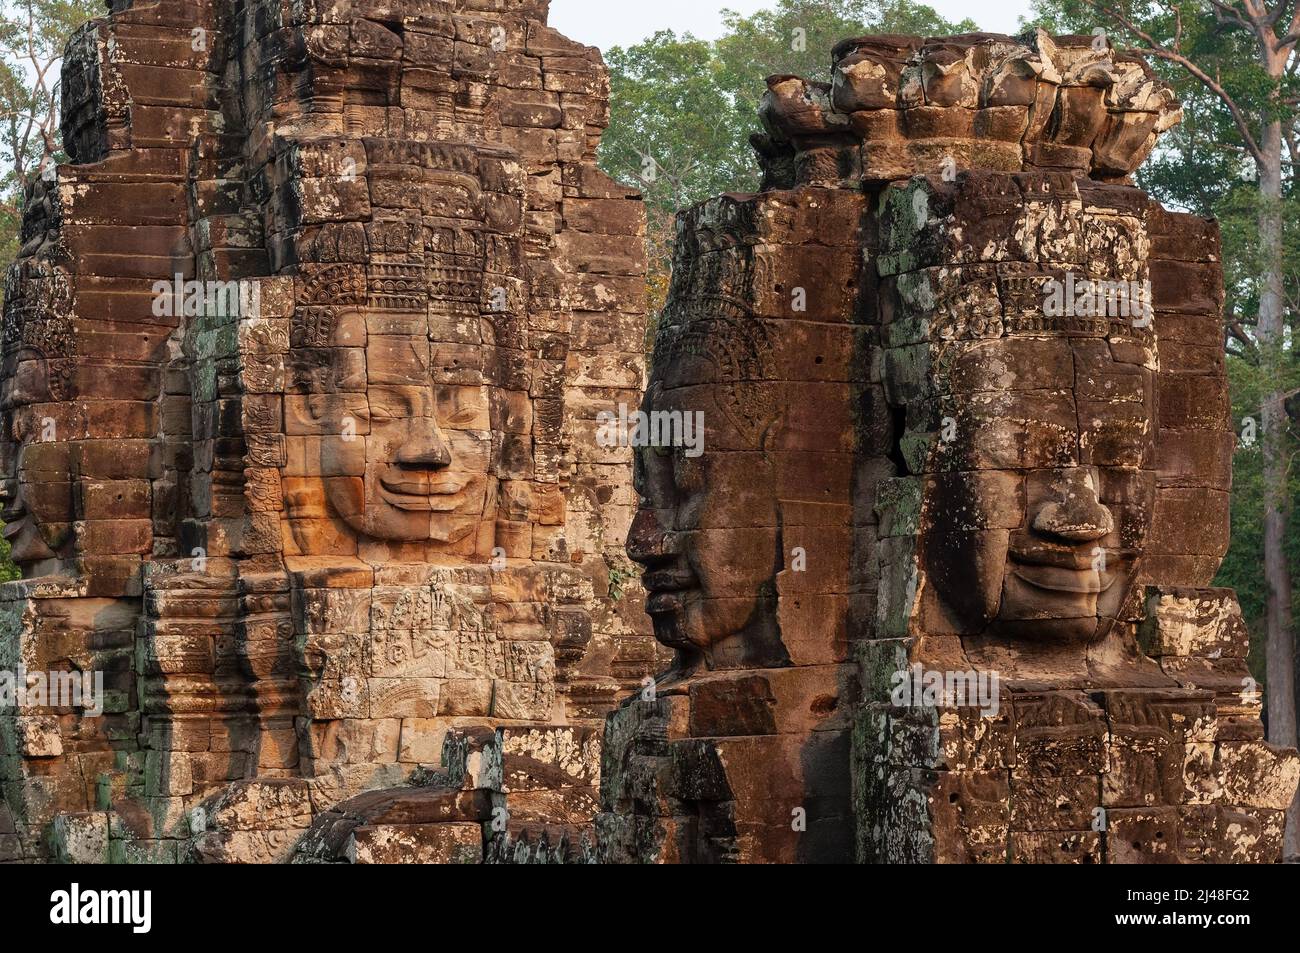 Buda se enfrenta en la arquitectura tradicional khmer al atardecer, el templo Bayon, Angkor, Camboya. Foto de stock